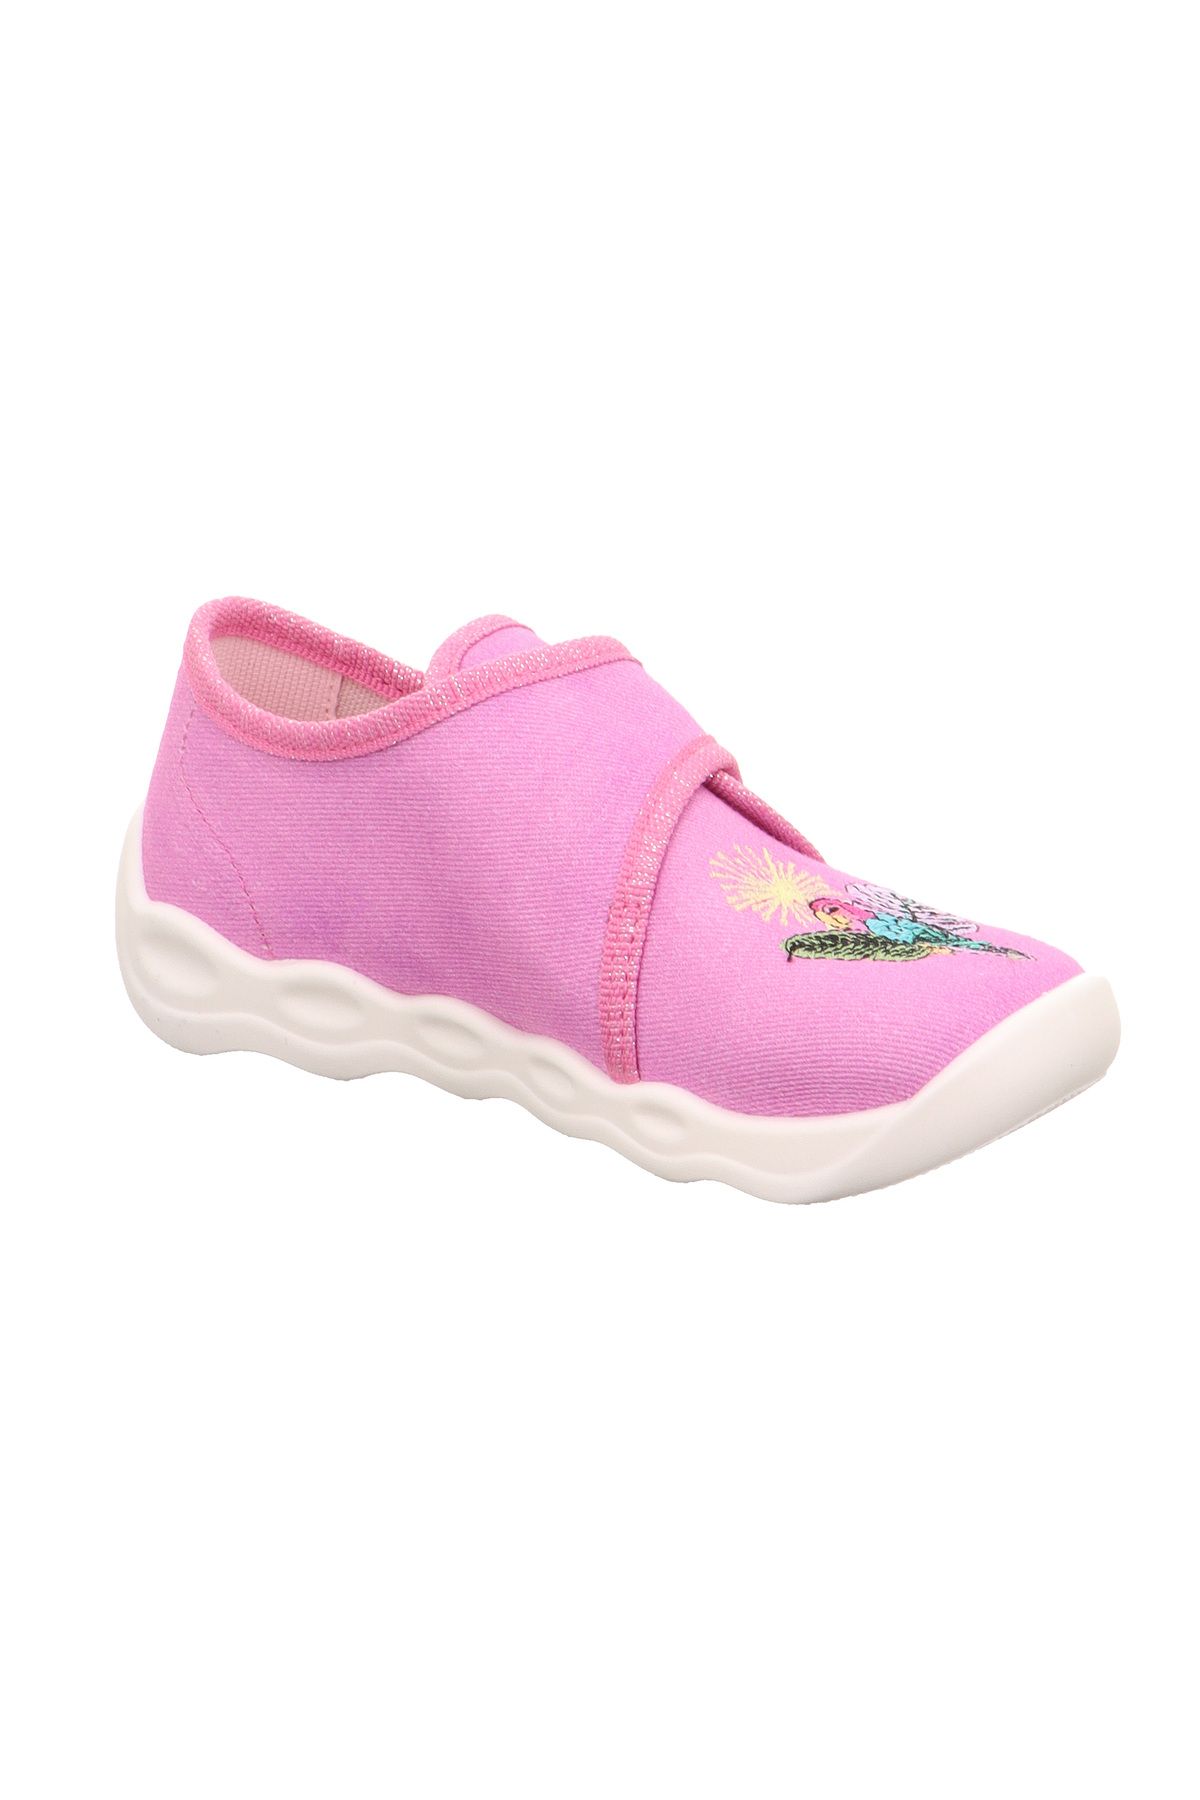 Superfit BUBBLE - Pink Cırt Cırtlı Ev ve Kreş Ayakkabısı